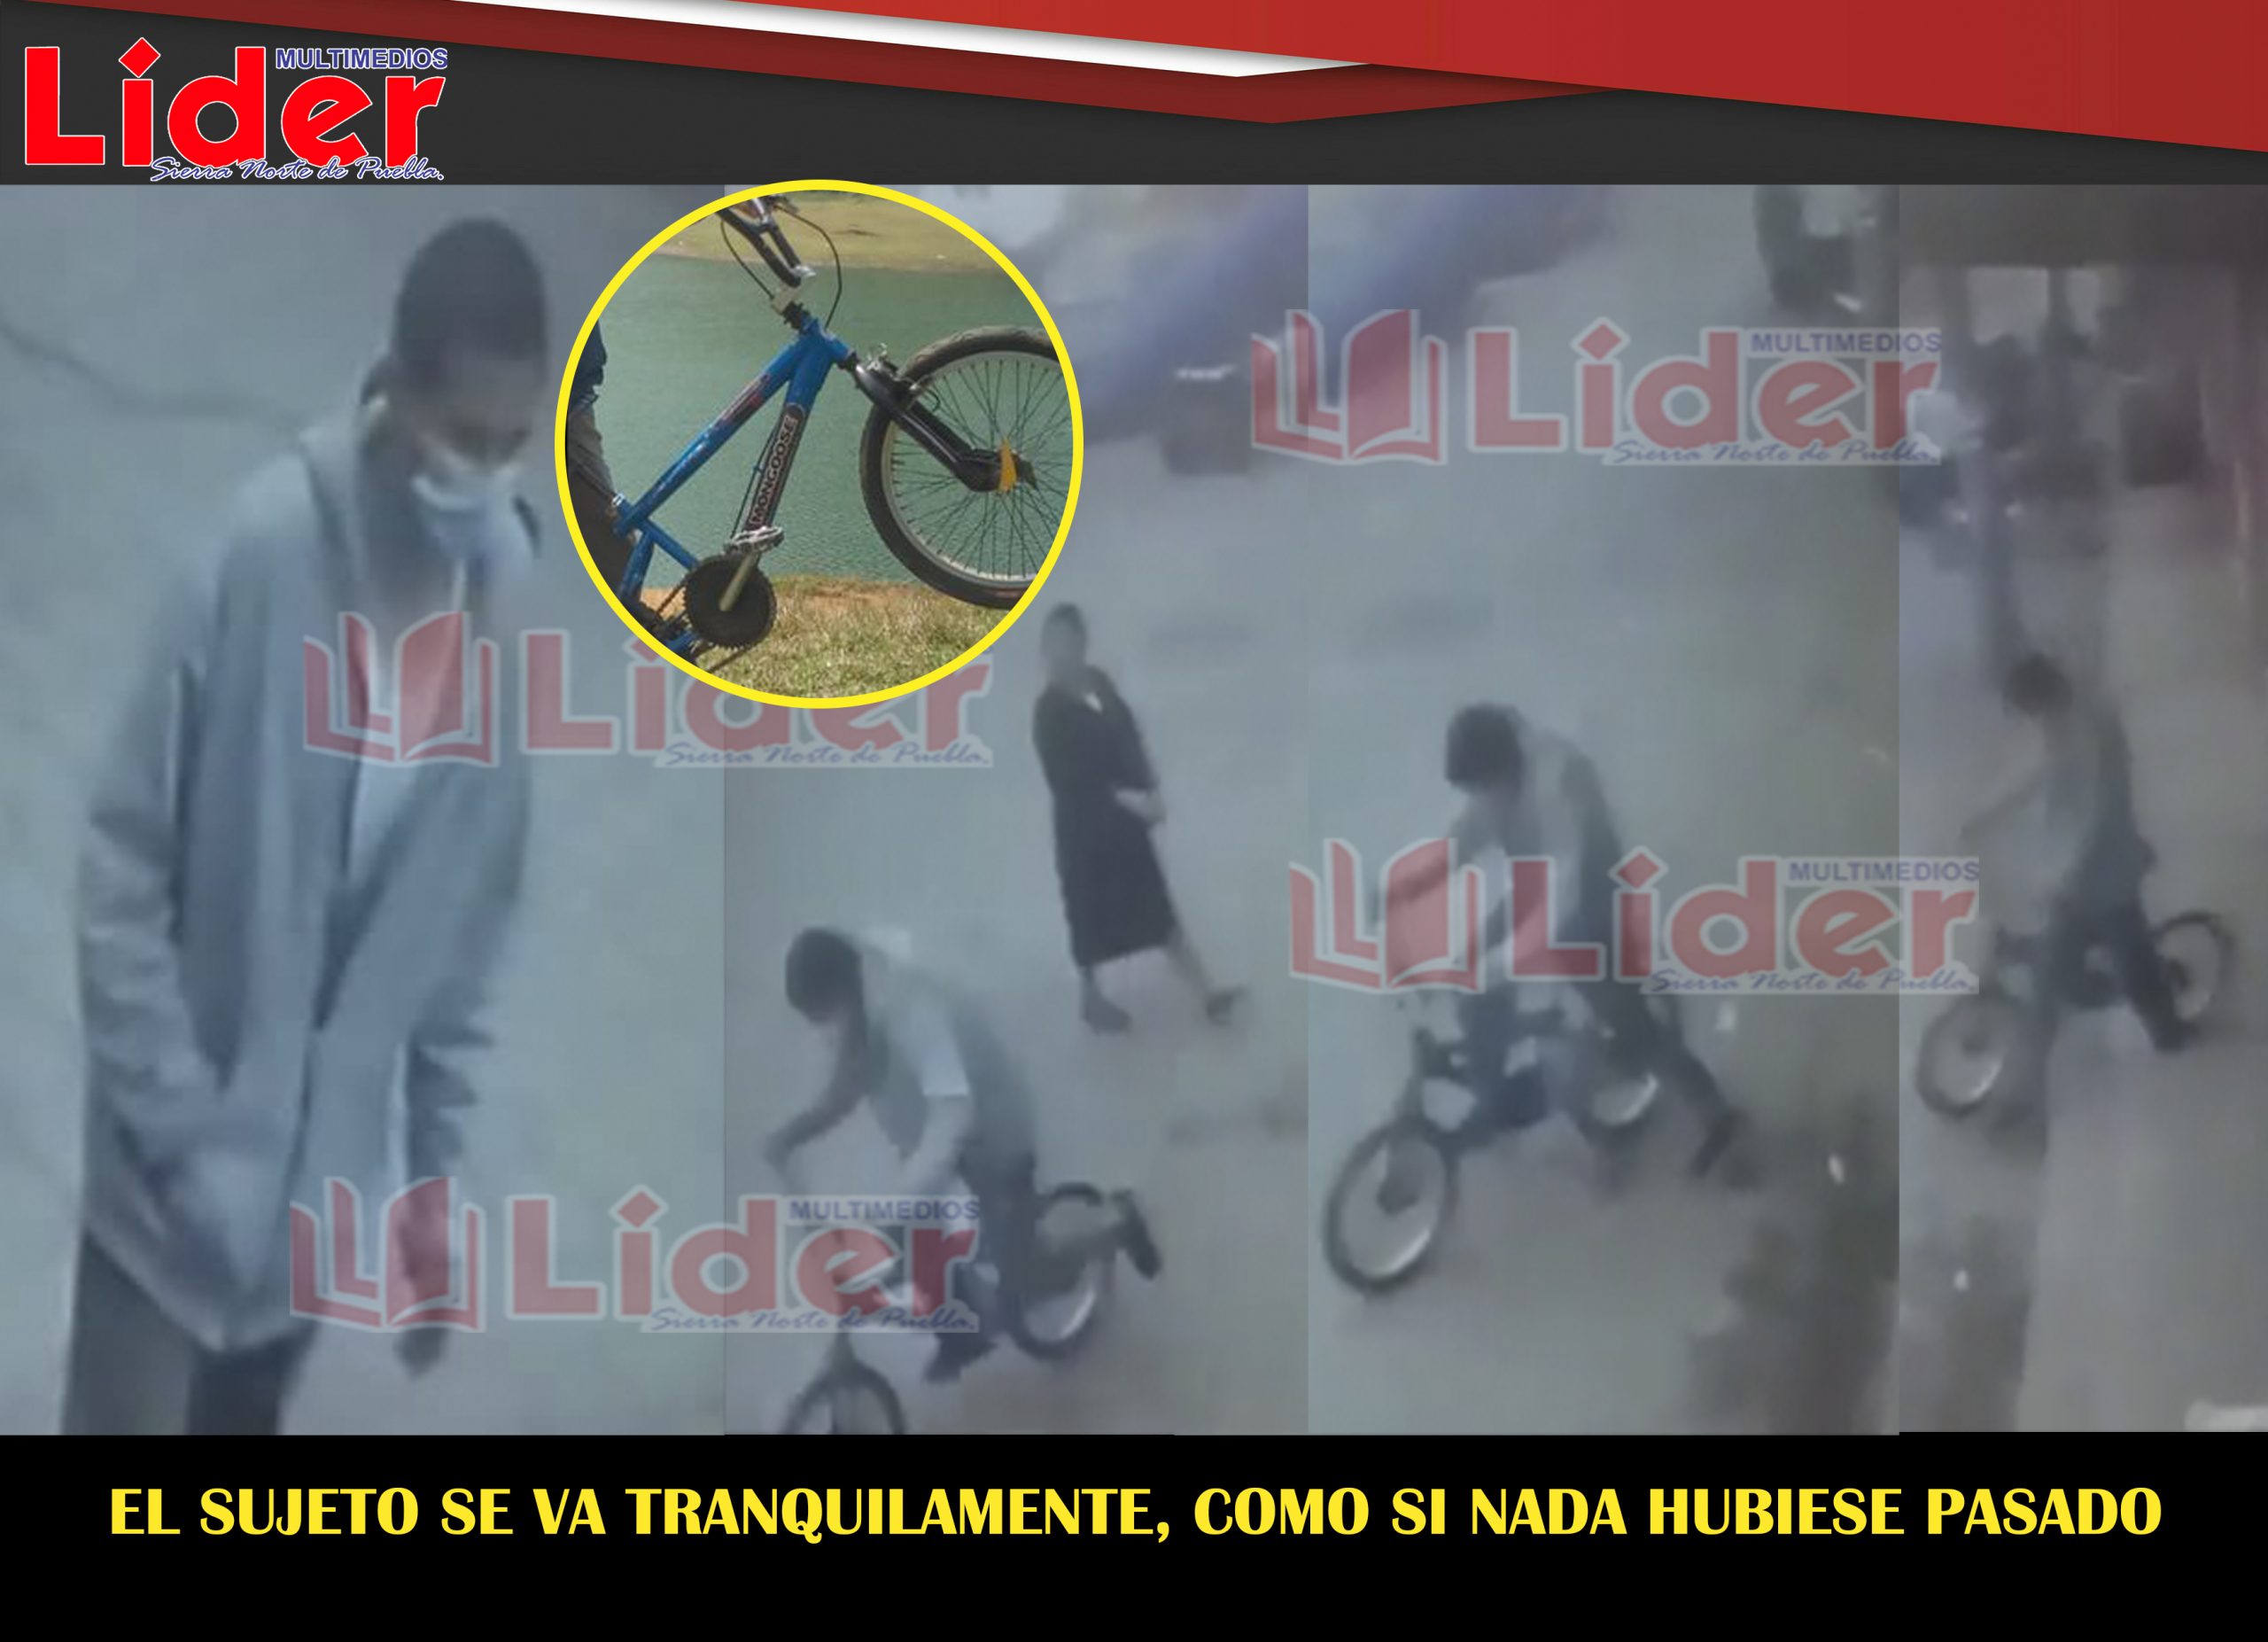 Presunto Ladrón es captado por cámara de vigilancia al robar una bicicleta